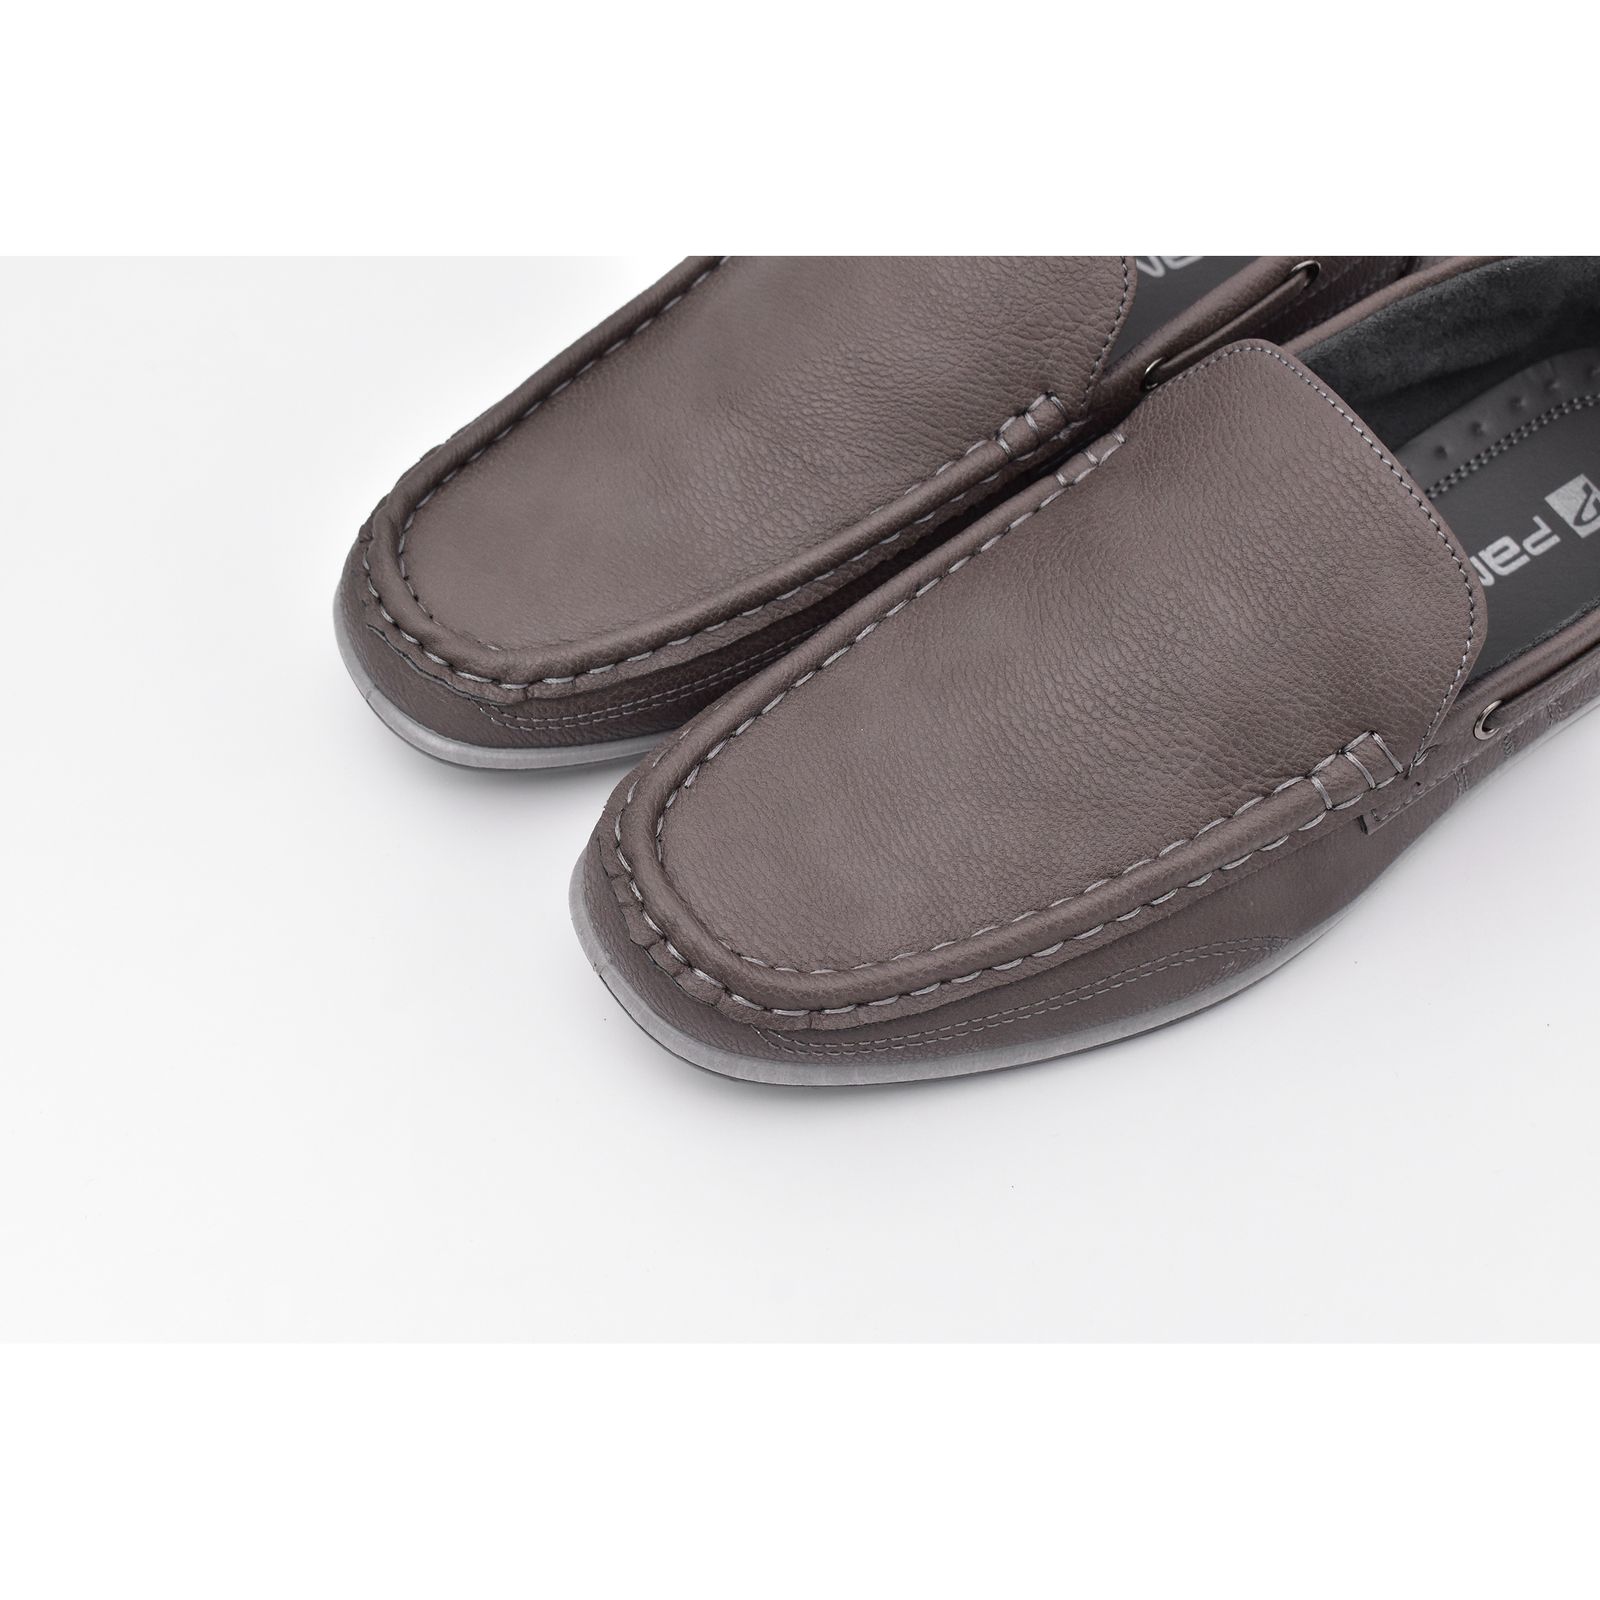 کفش روزمره مردانه پاما مدل KJ-056 کد G1539 -  - 8